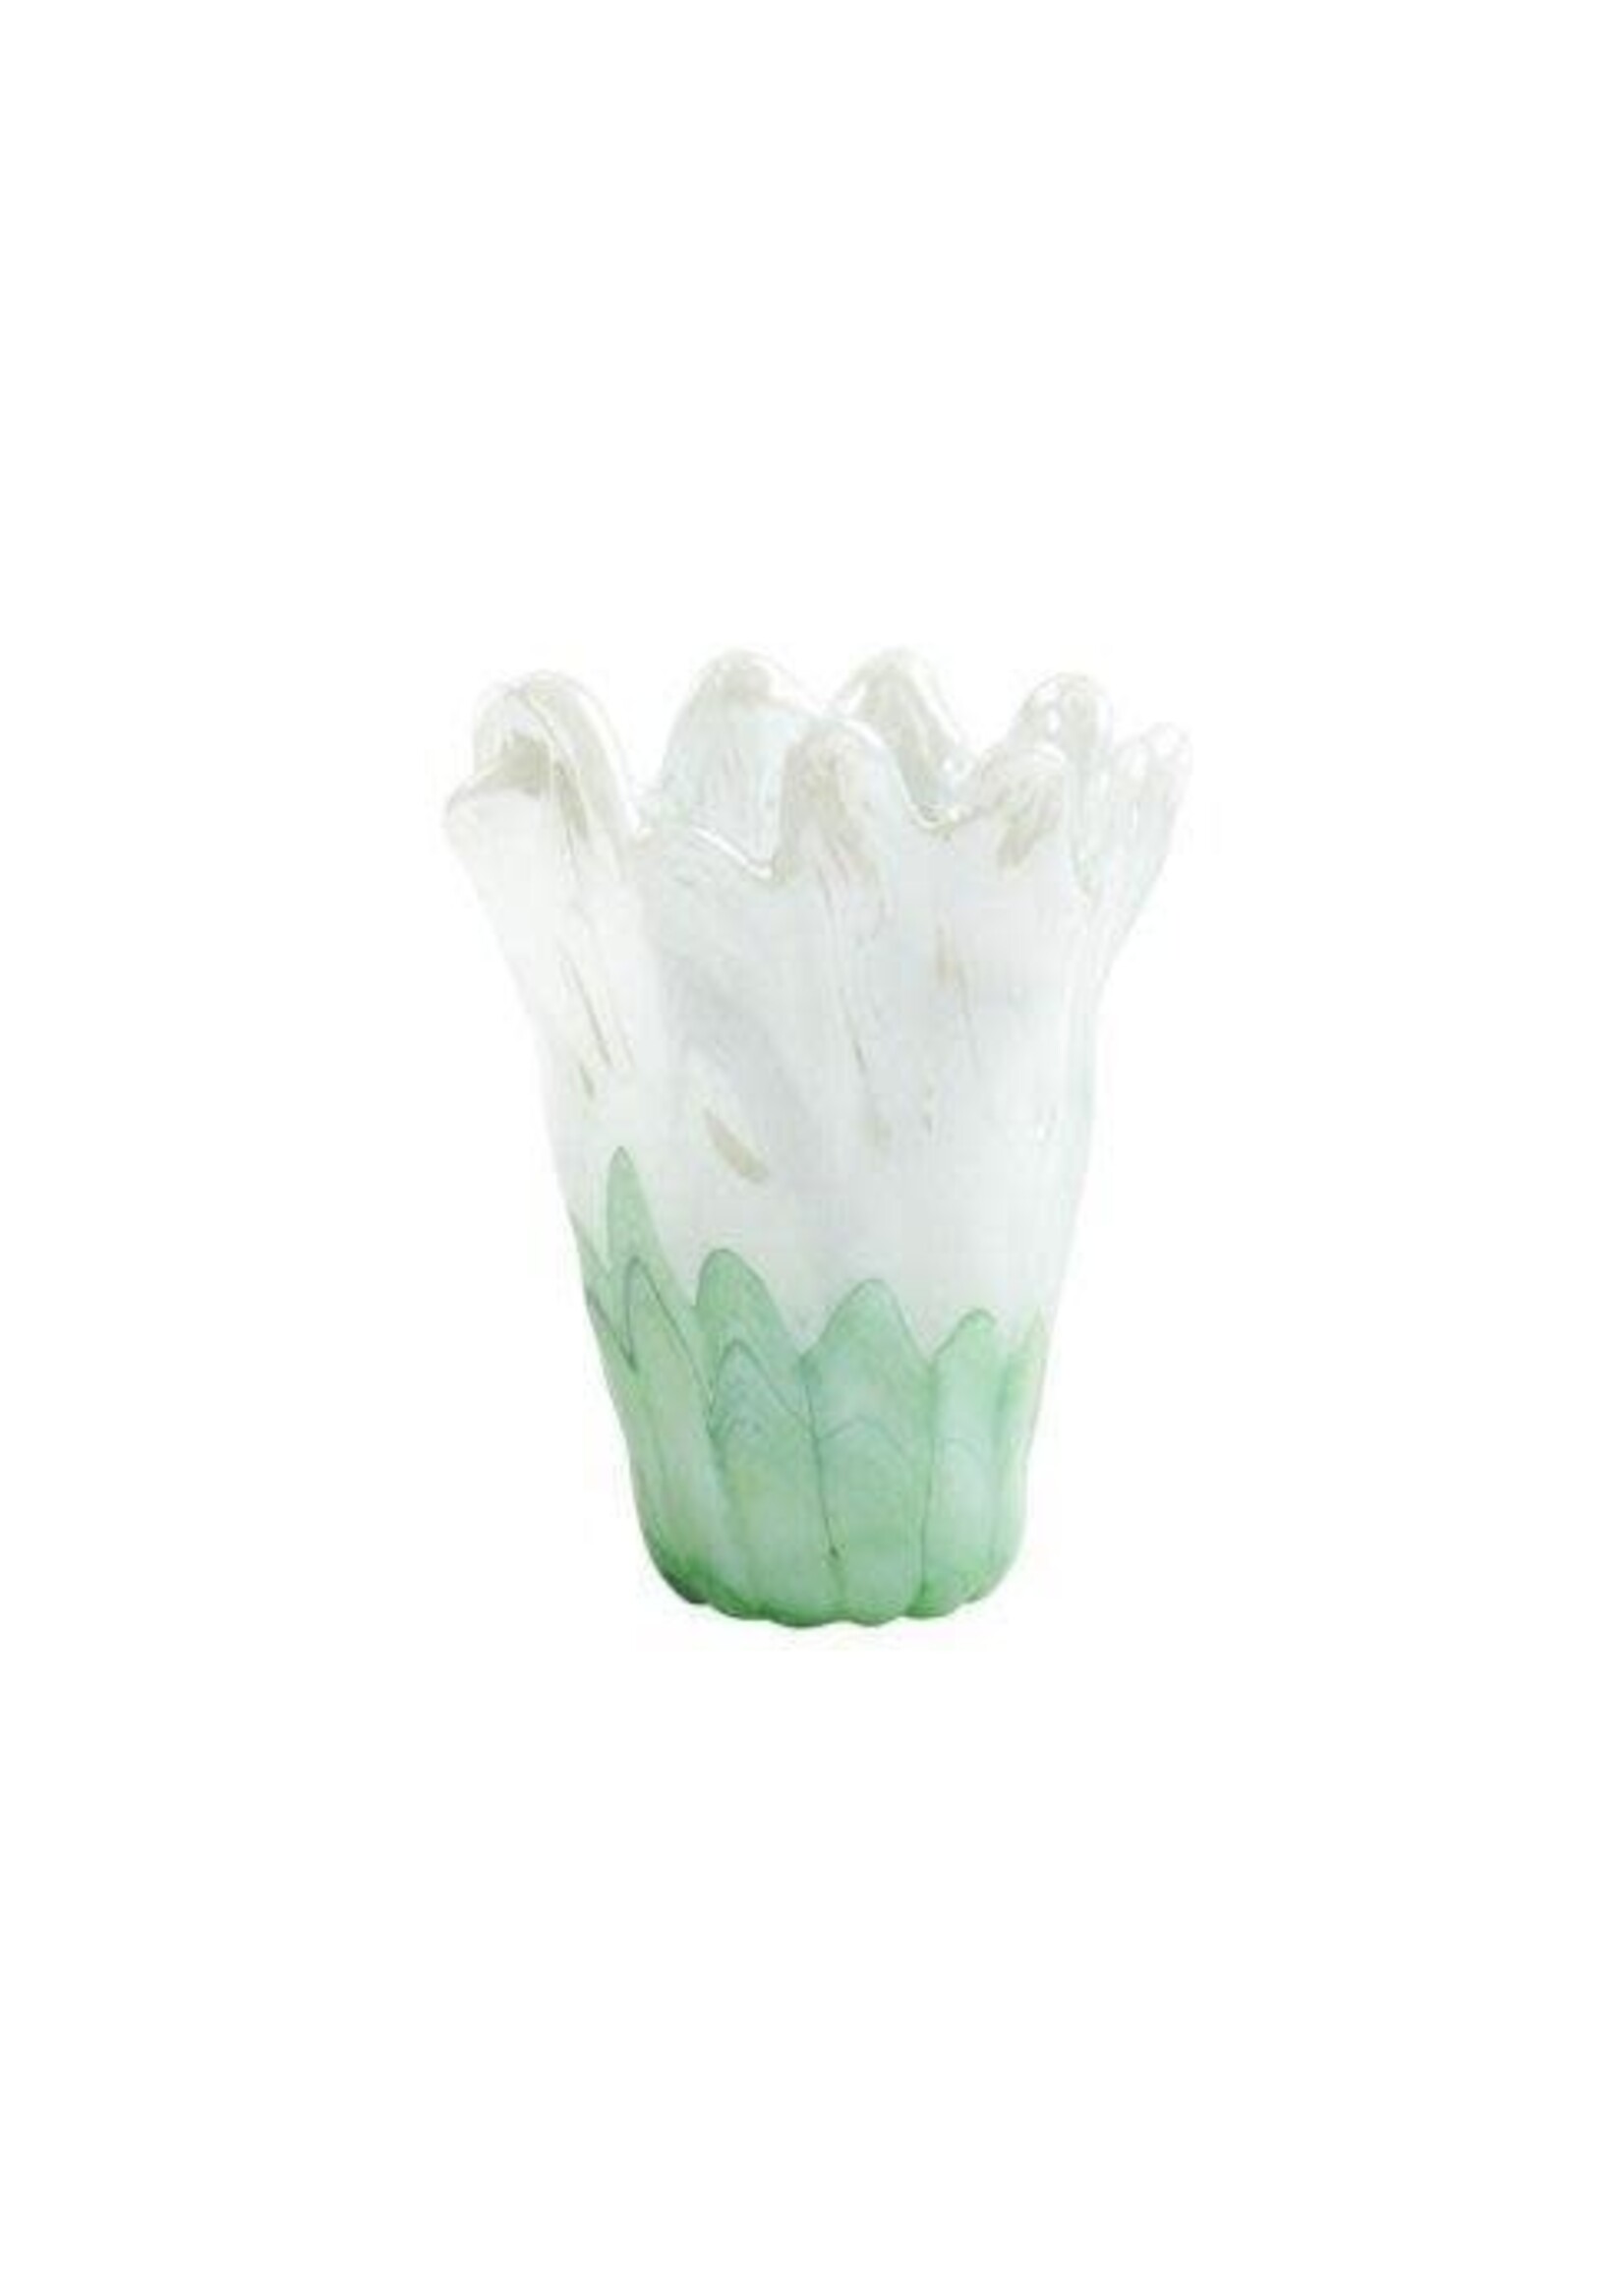 VIETRI Onda Glass Green and White Medium Vase